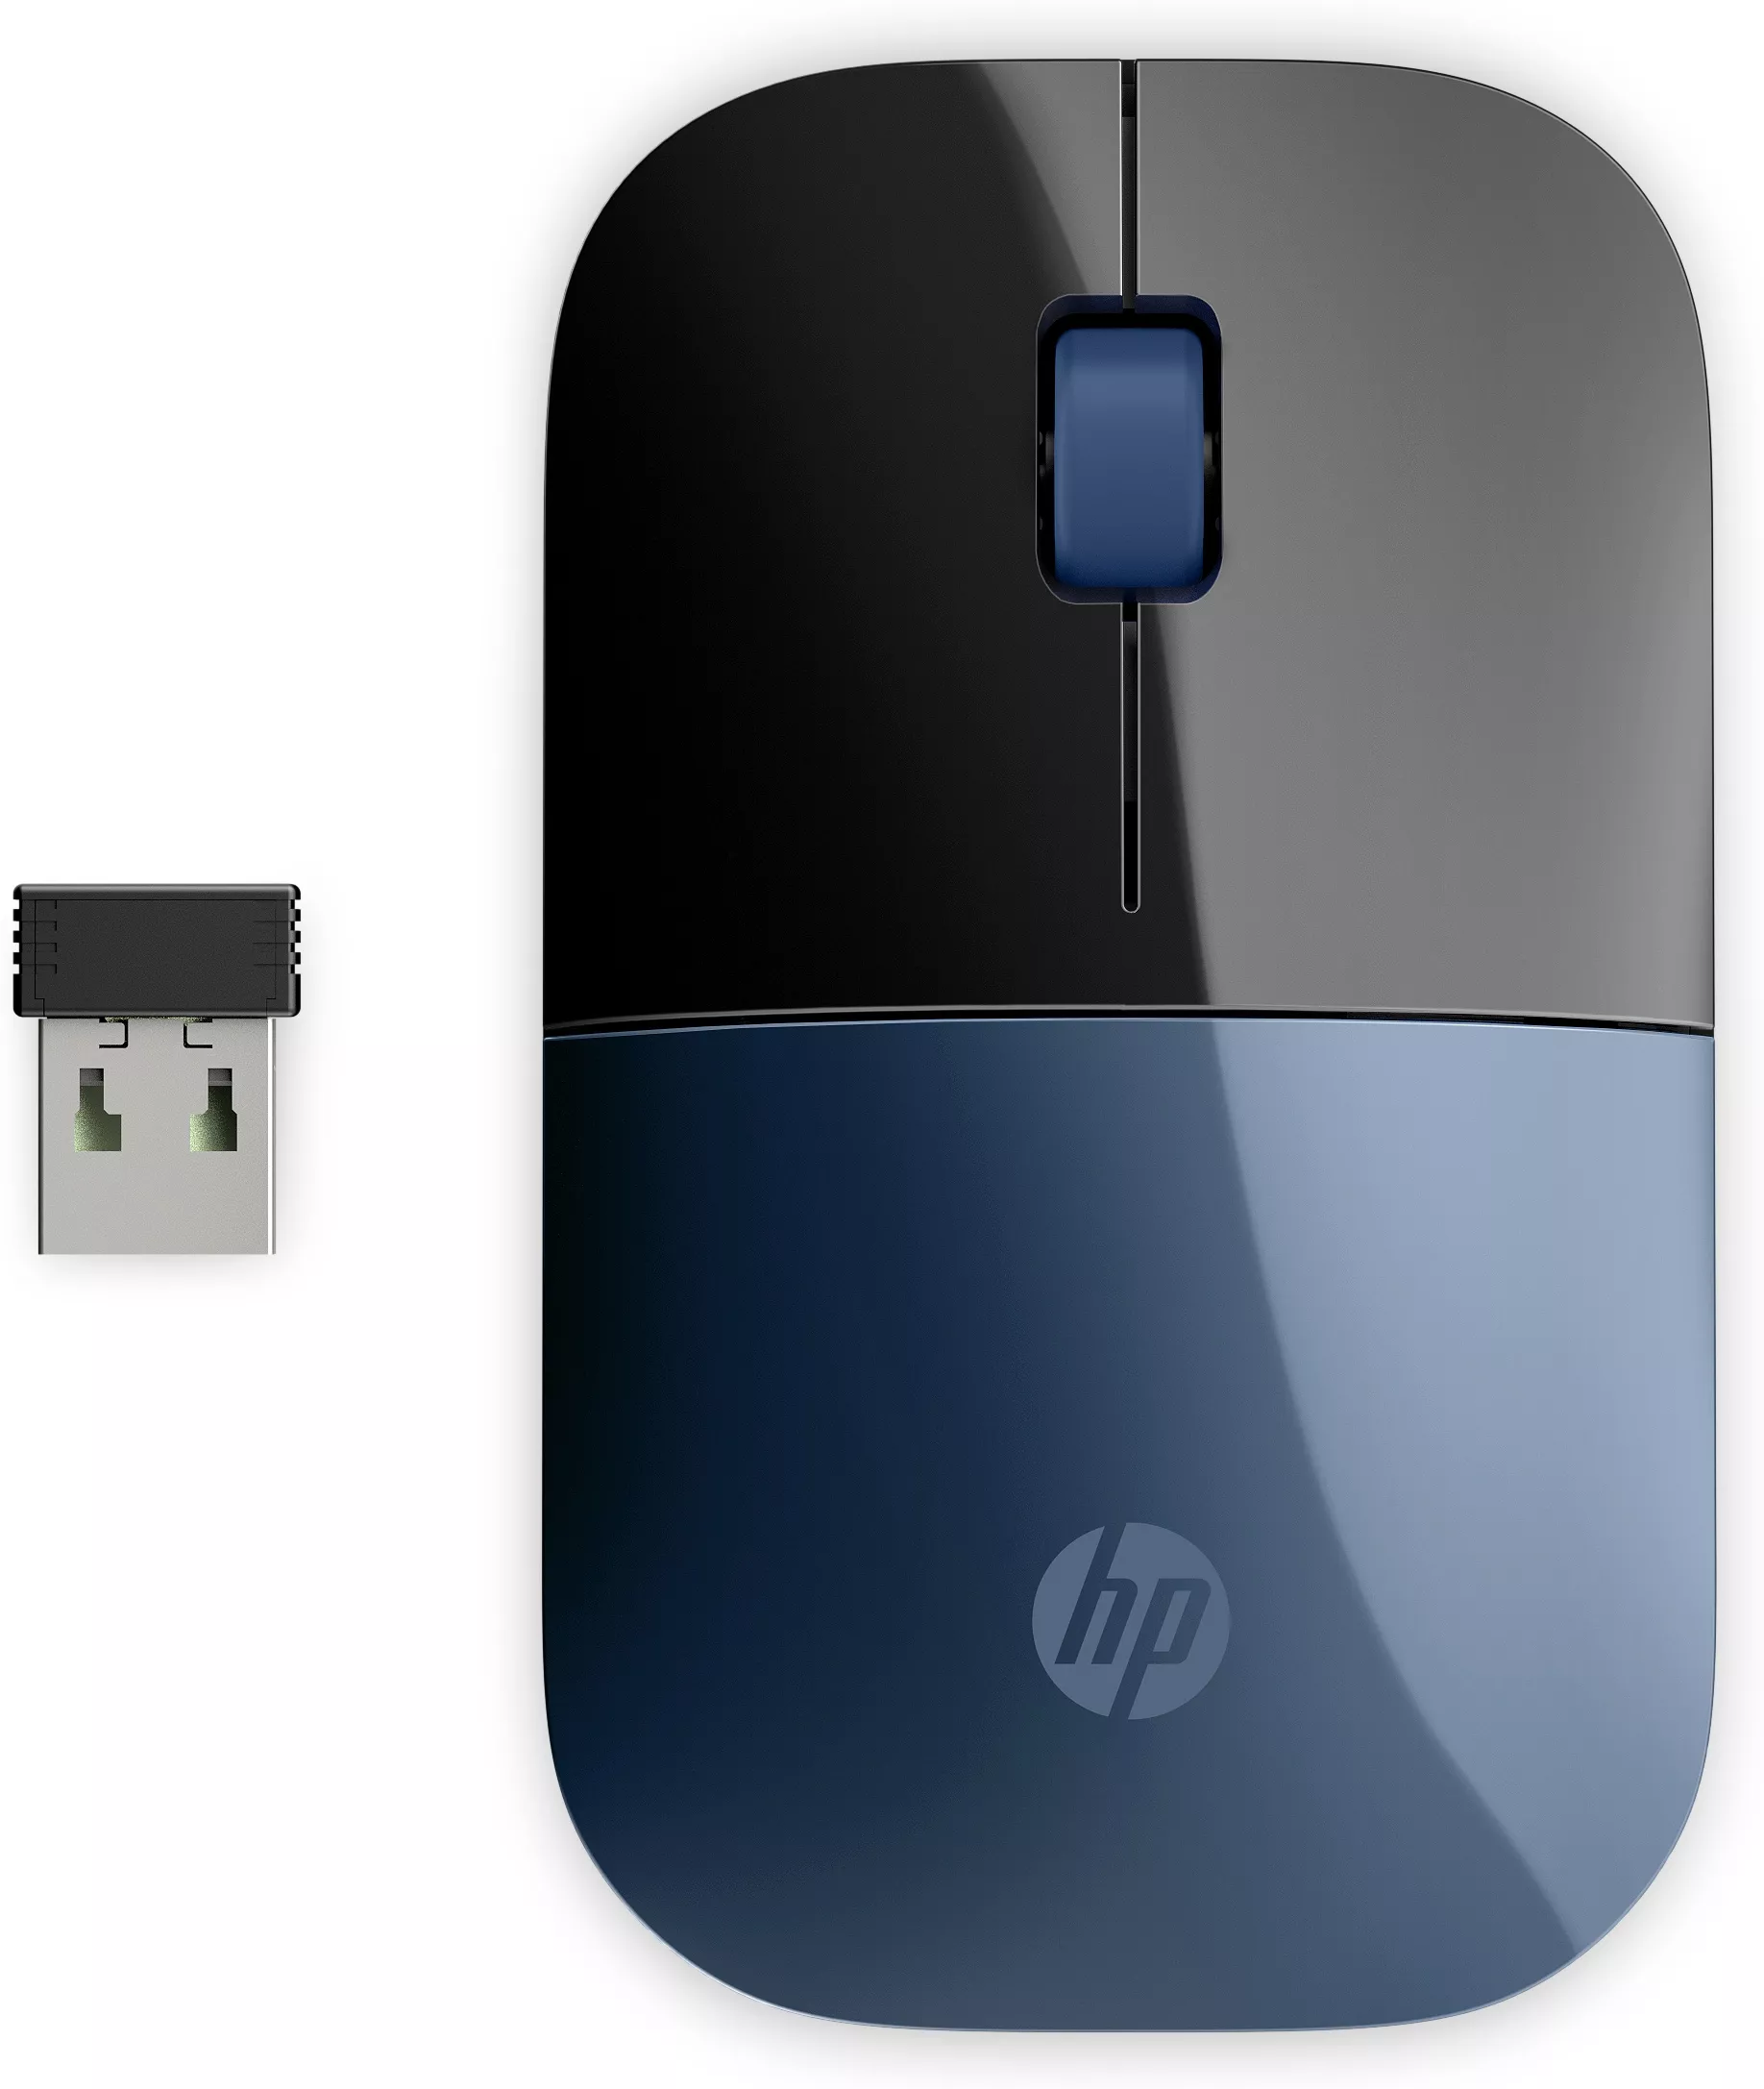 Achat HP Z3700 Wireless Mouse - Lumiere Blue au meilleur prix